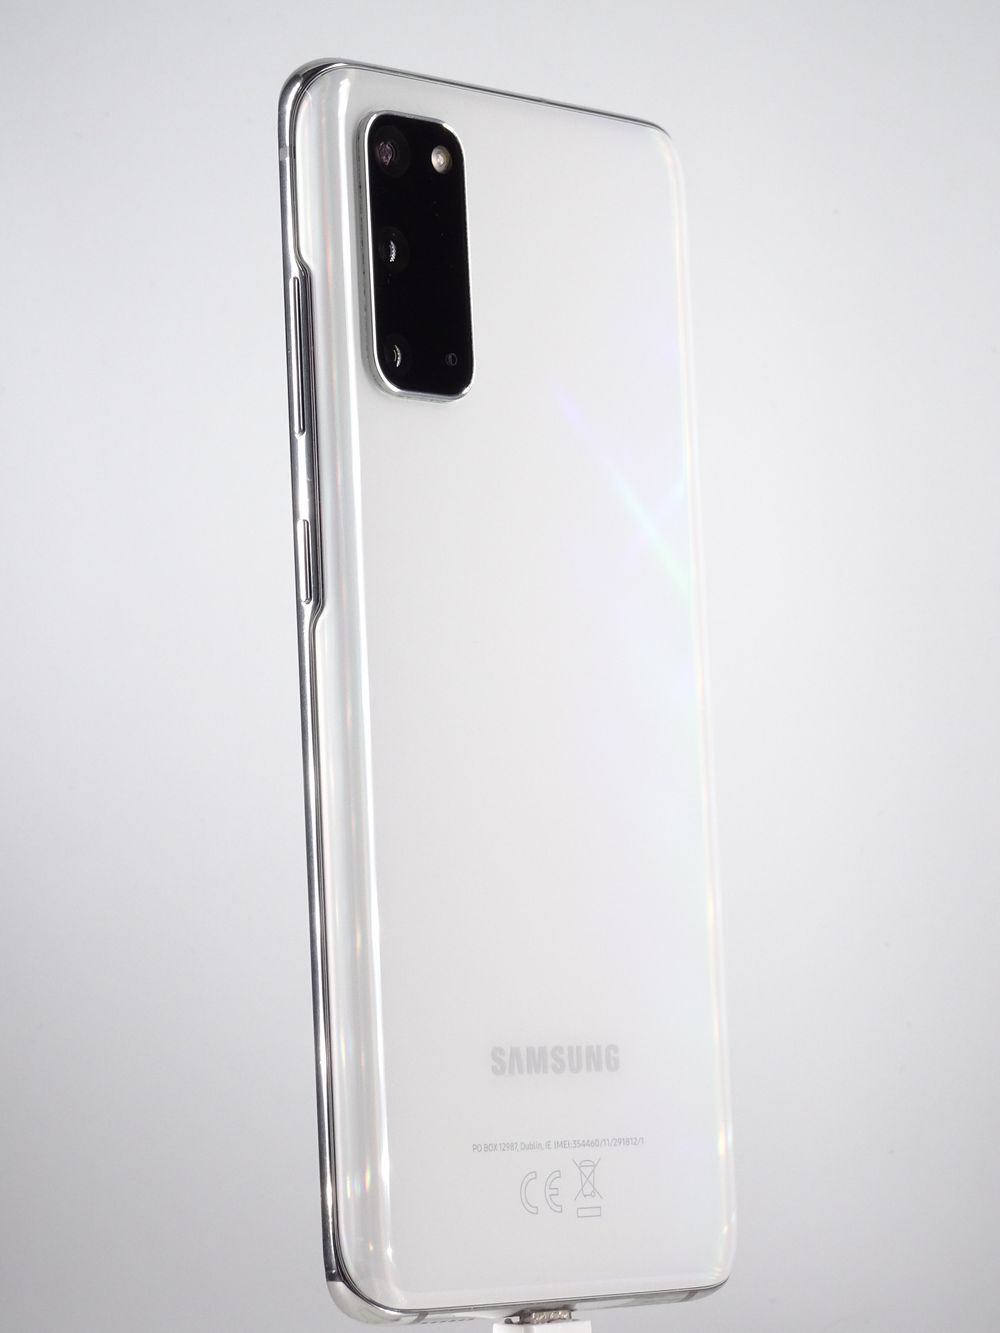 Мобилен телефон Samsung, Galaxy S20 5G, 128 GB, Cloud White,  Като нов